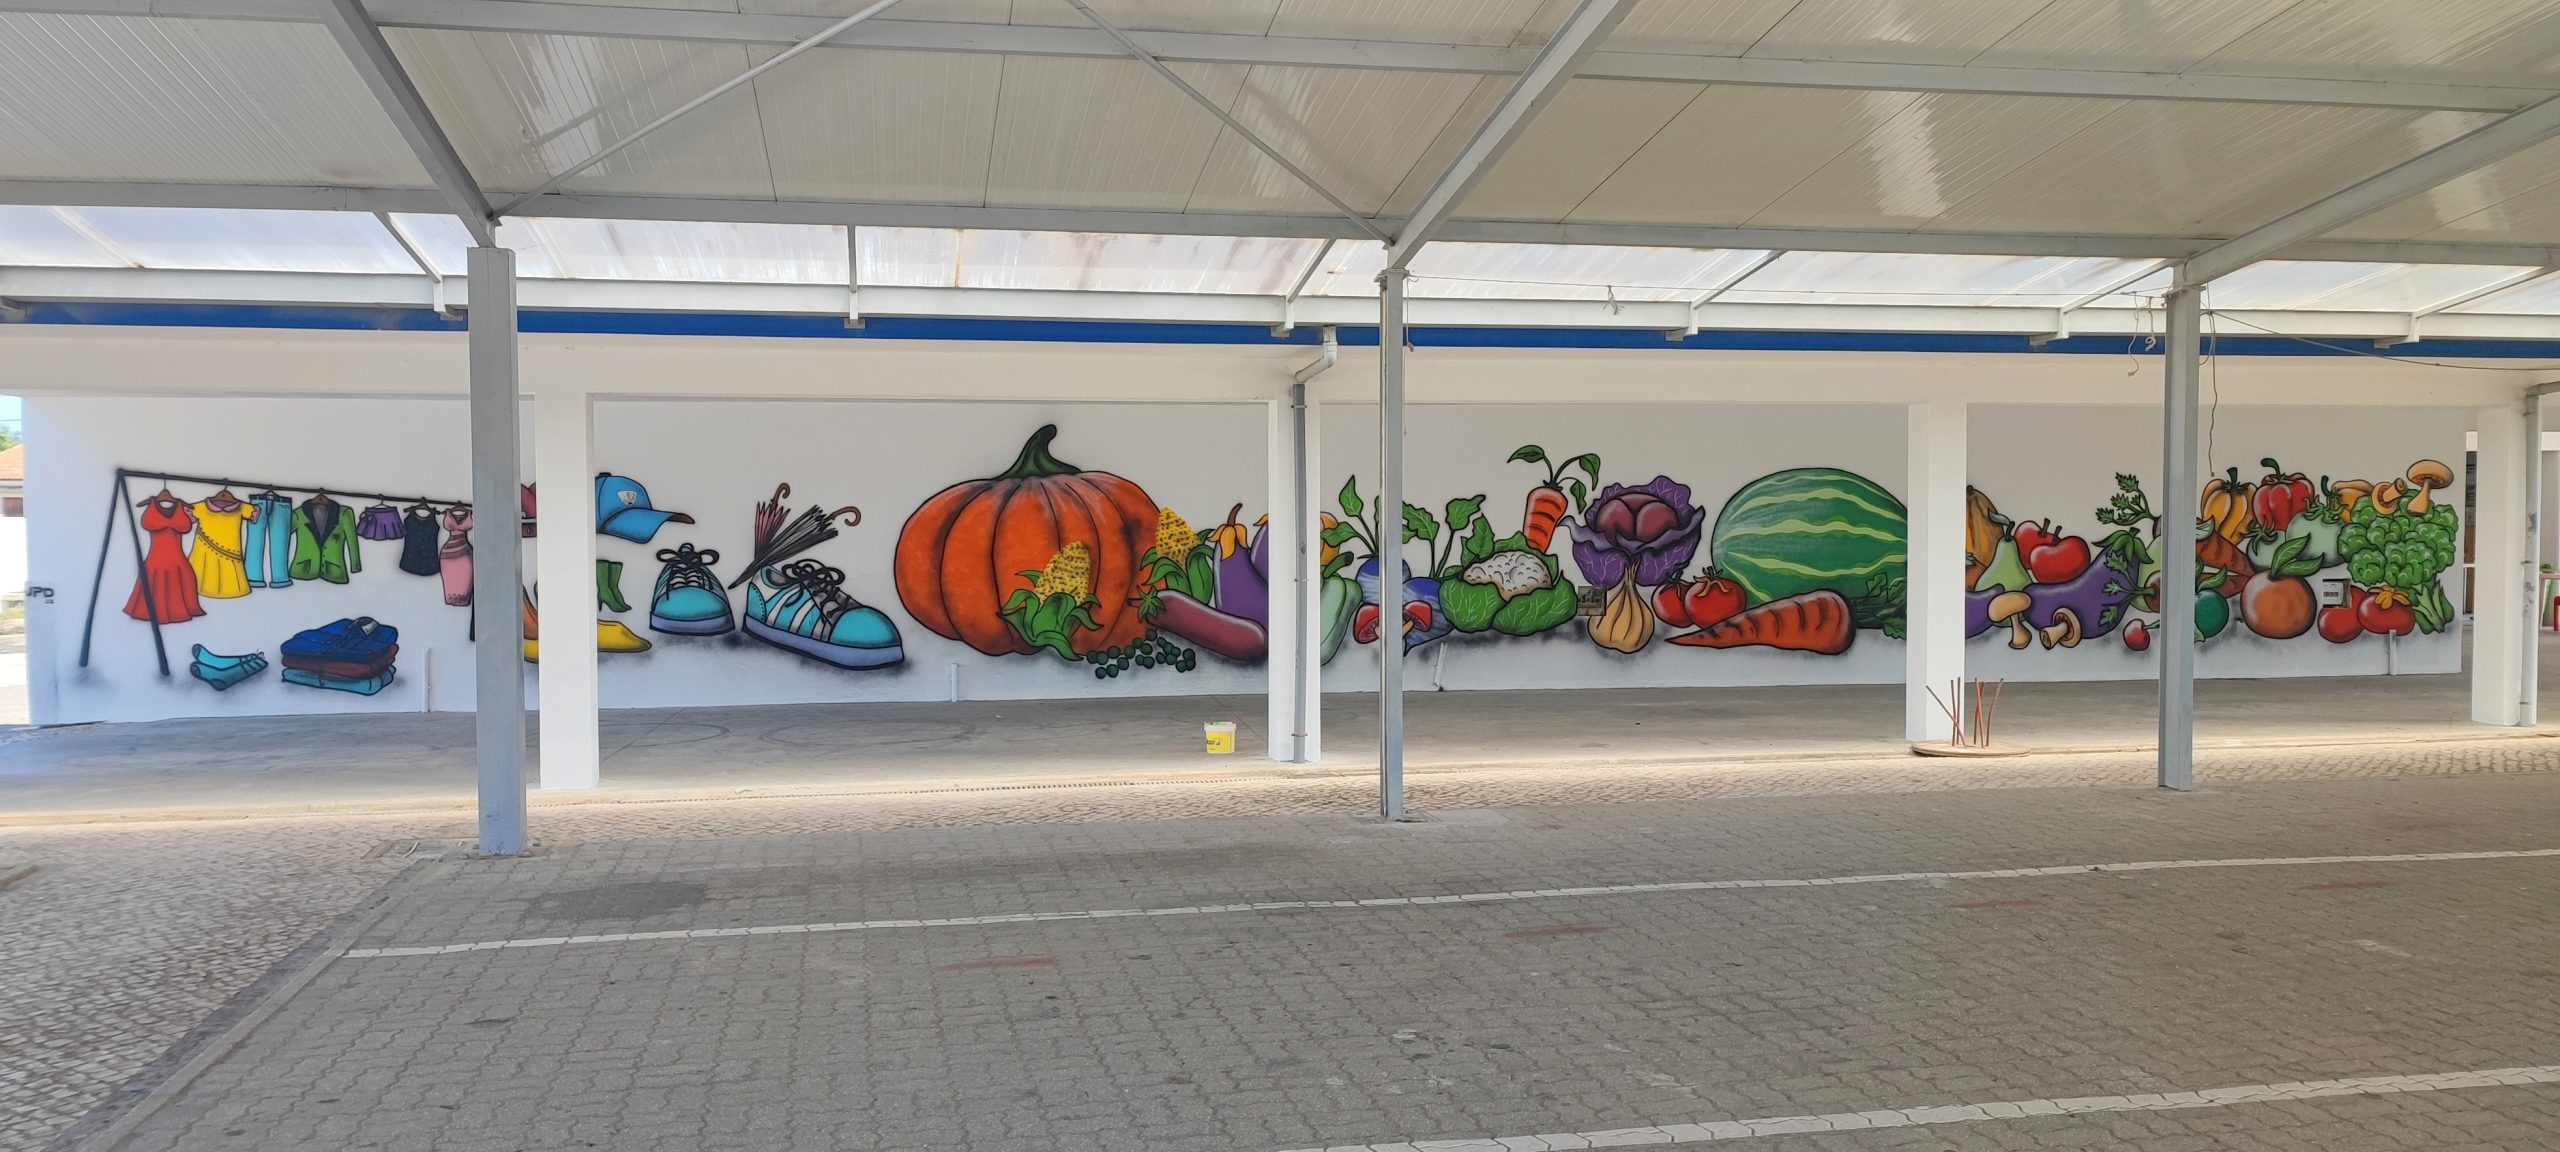 Mural redecorado dá mais vida ao Mercado de Pardilhó